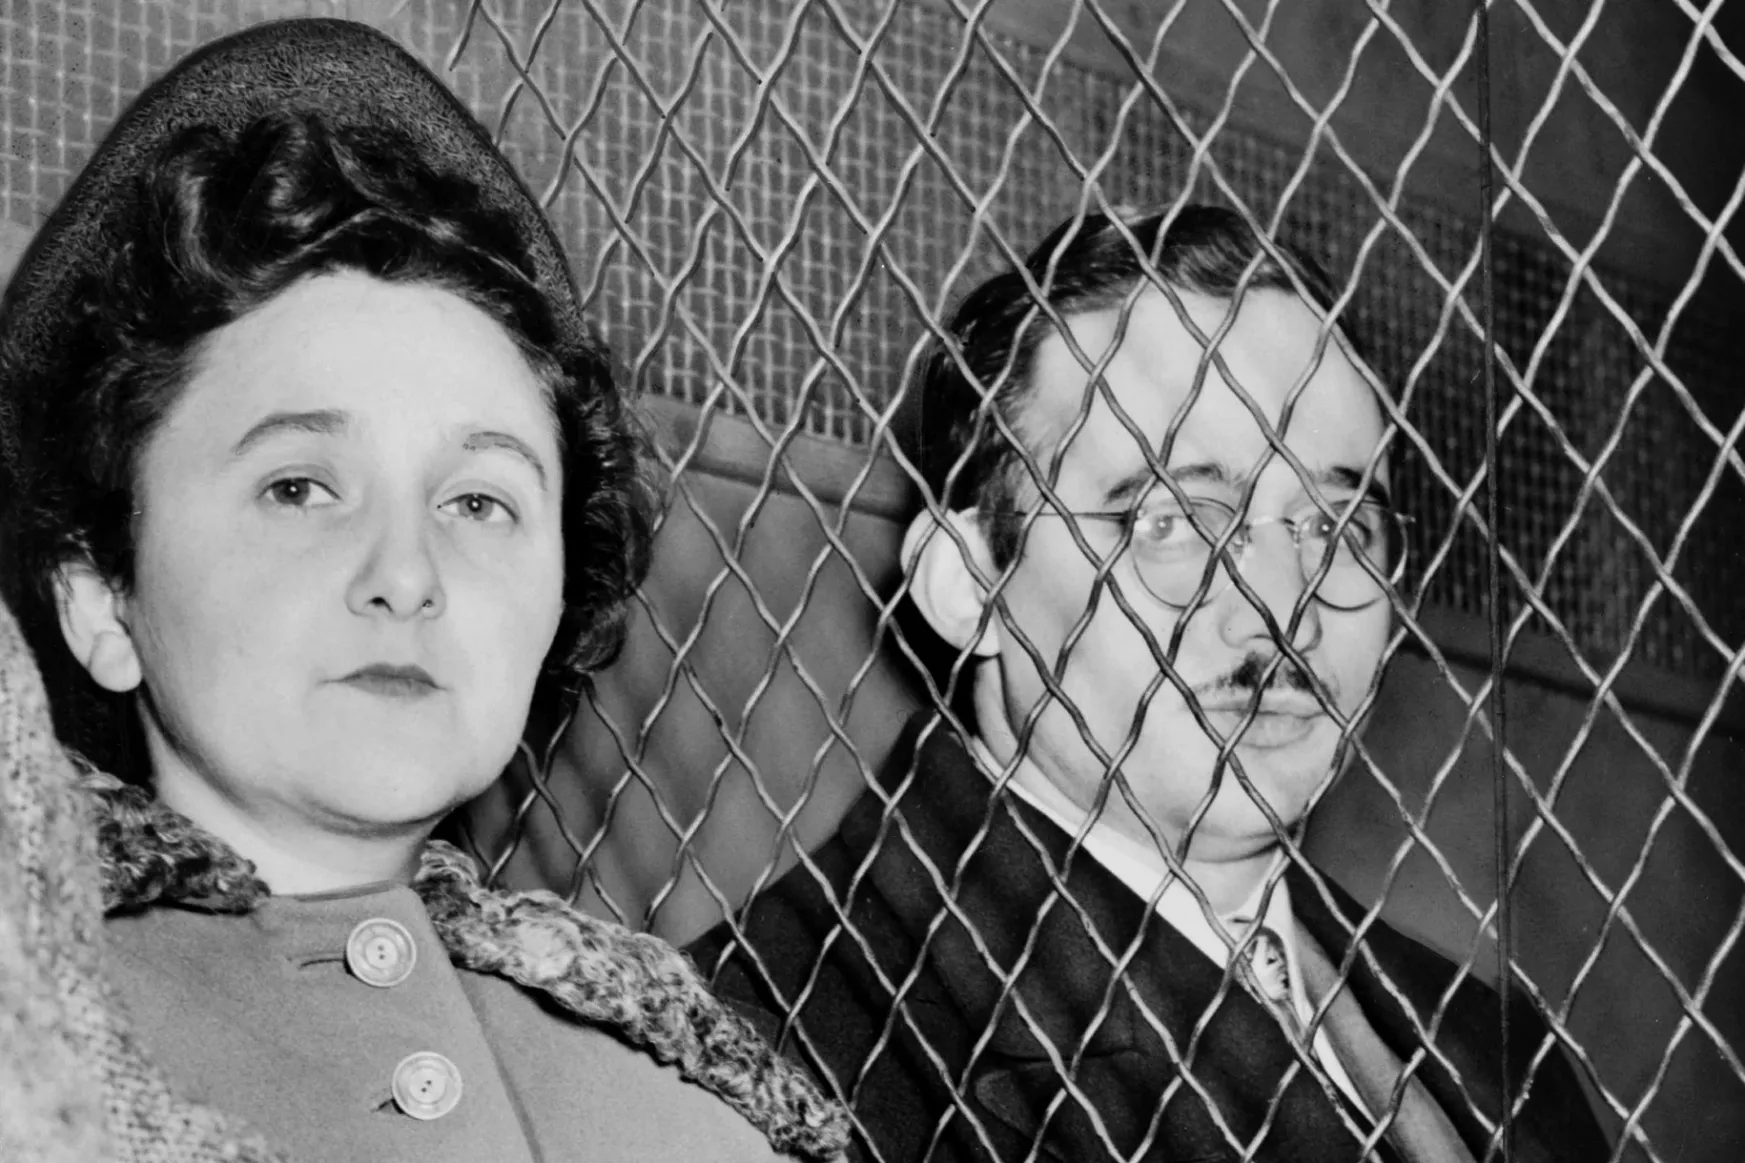 Szovjet kémek voltak? – egész Amerikát lázban tartotta a 70 éve kivégzett Rosenberg házaspár ügye